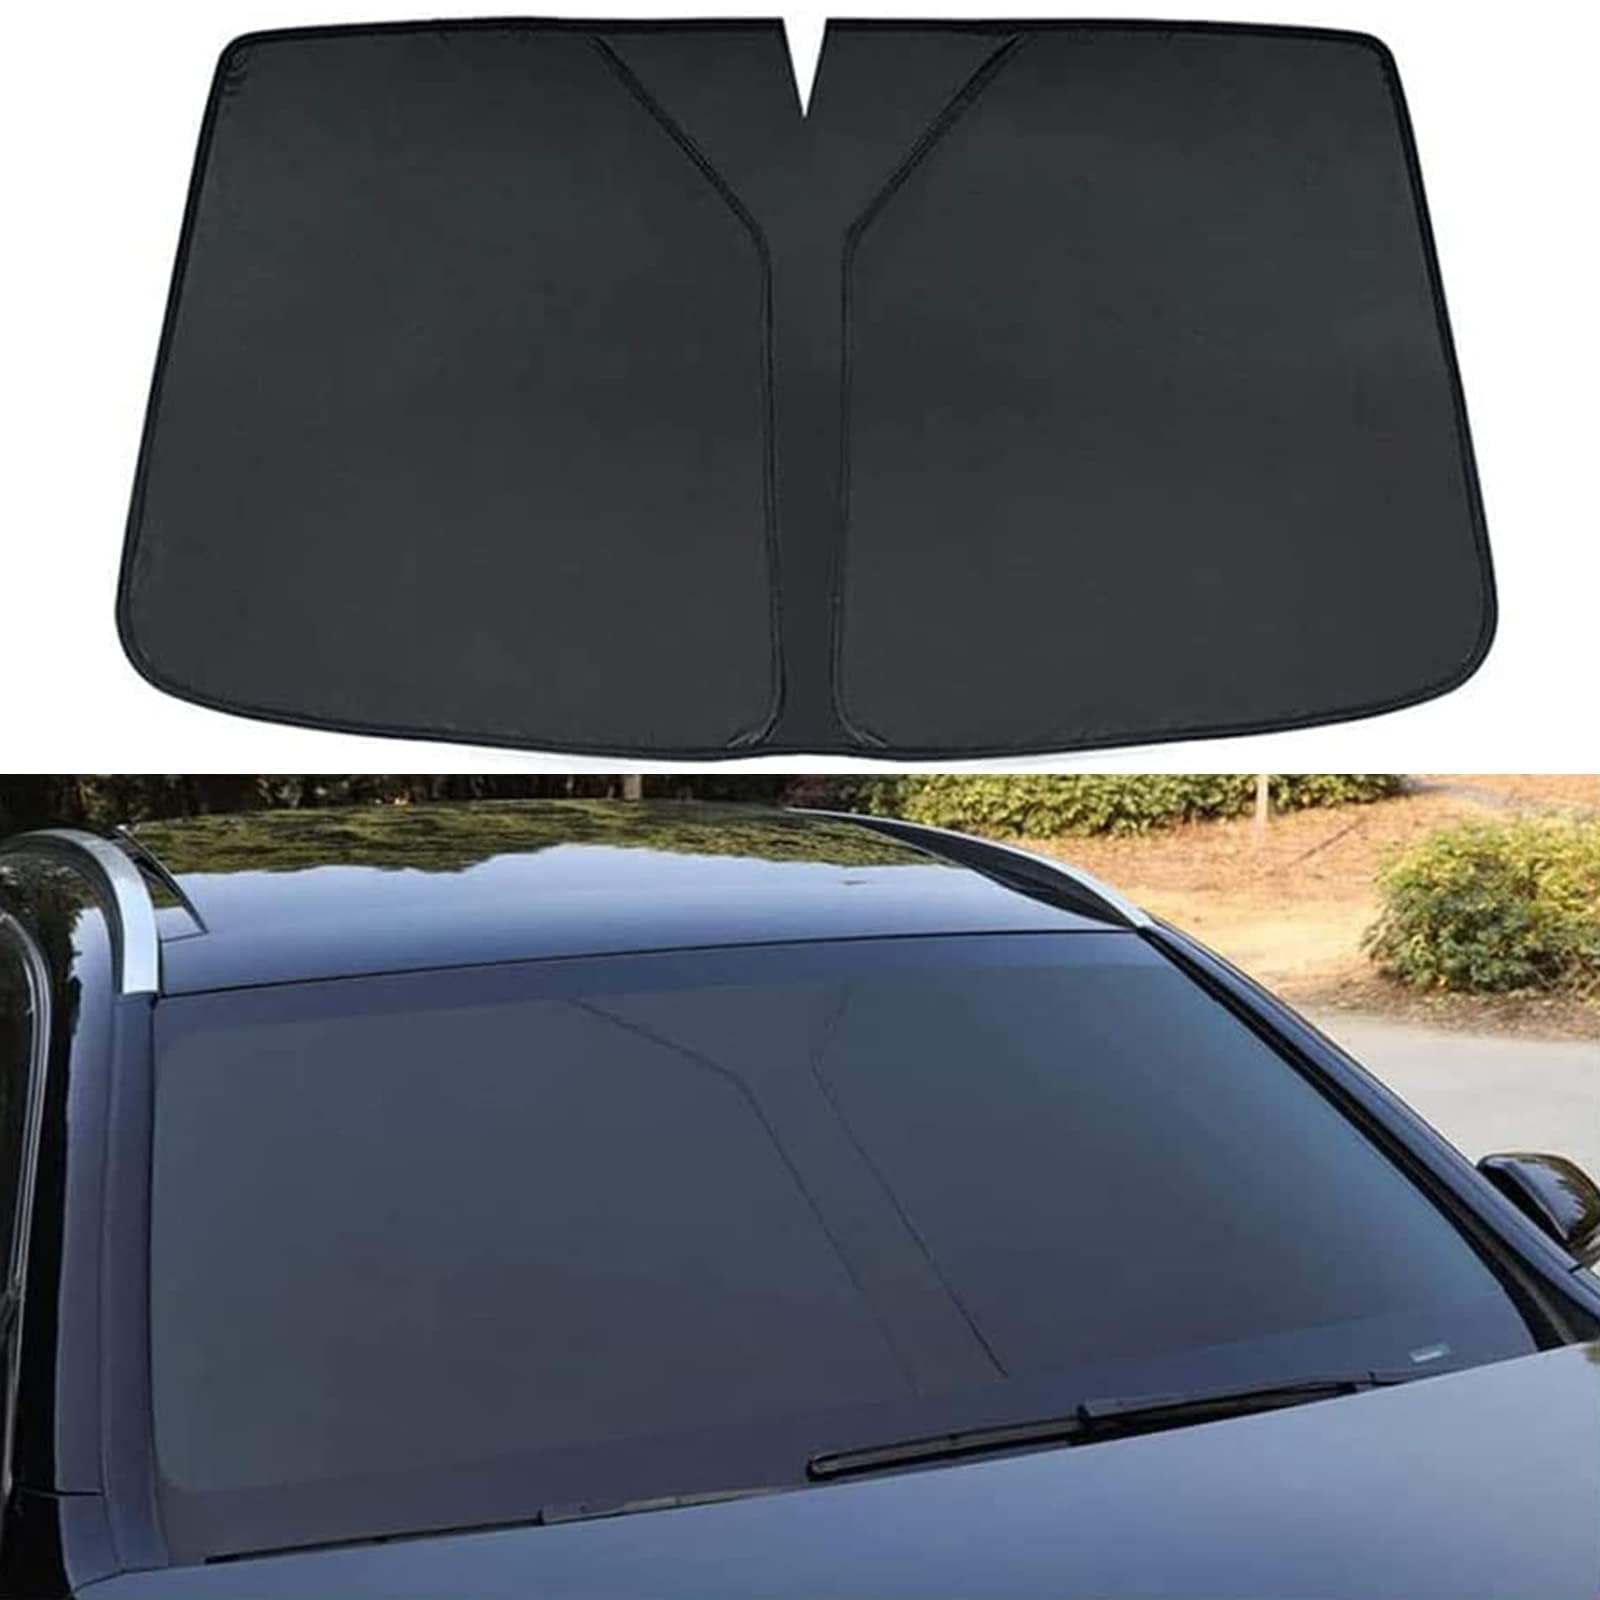 Auto Windschutzscheibe Sonnenschutz für Vw Tharu,Verdunkelung Faltbar und Tragbar Wärmeisolierung Windschutzscheiben-Innenzubehör,Black von MUGONGWEI